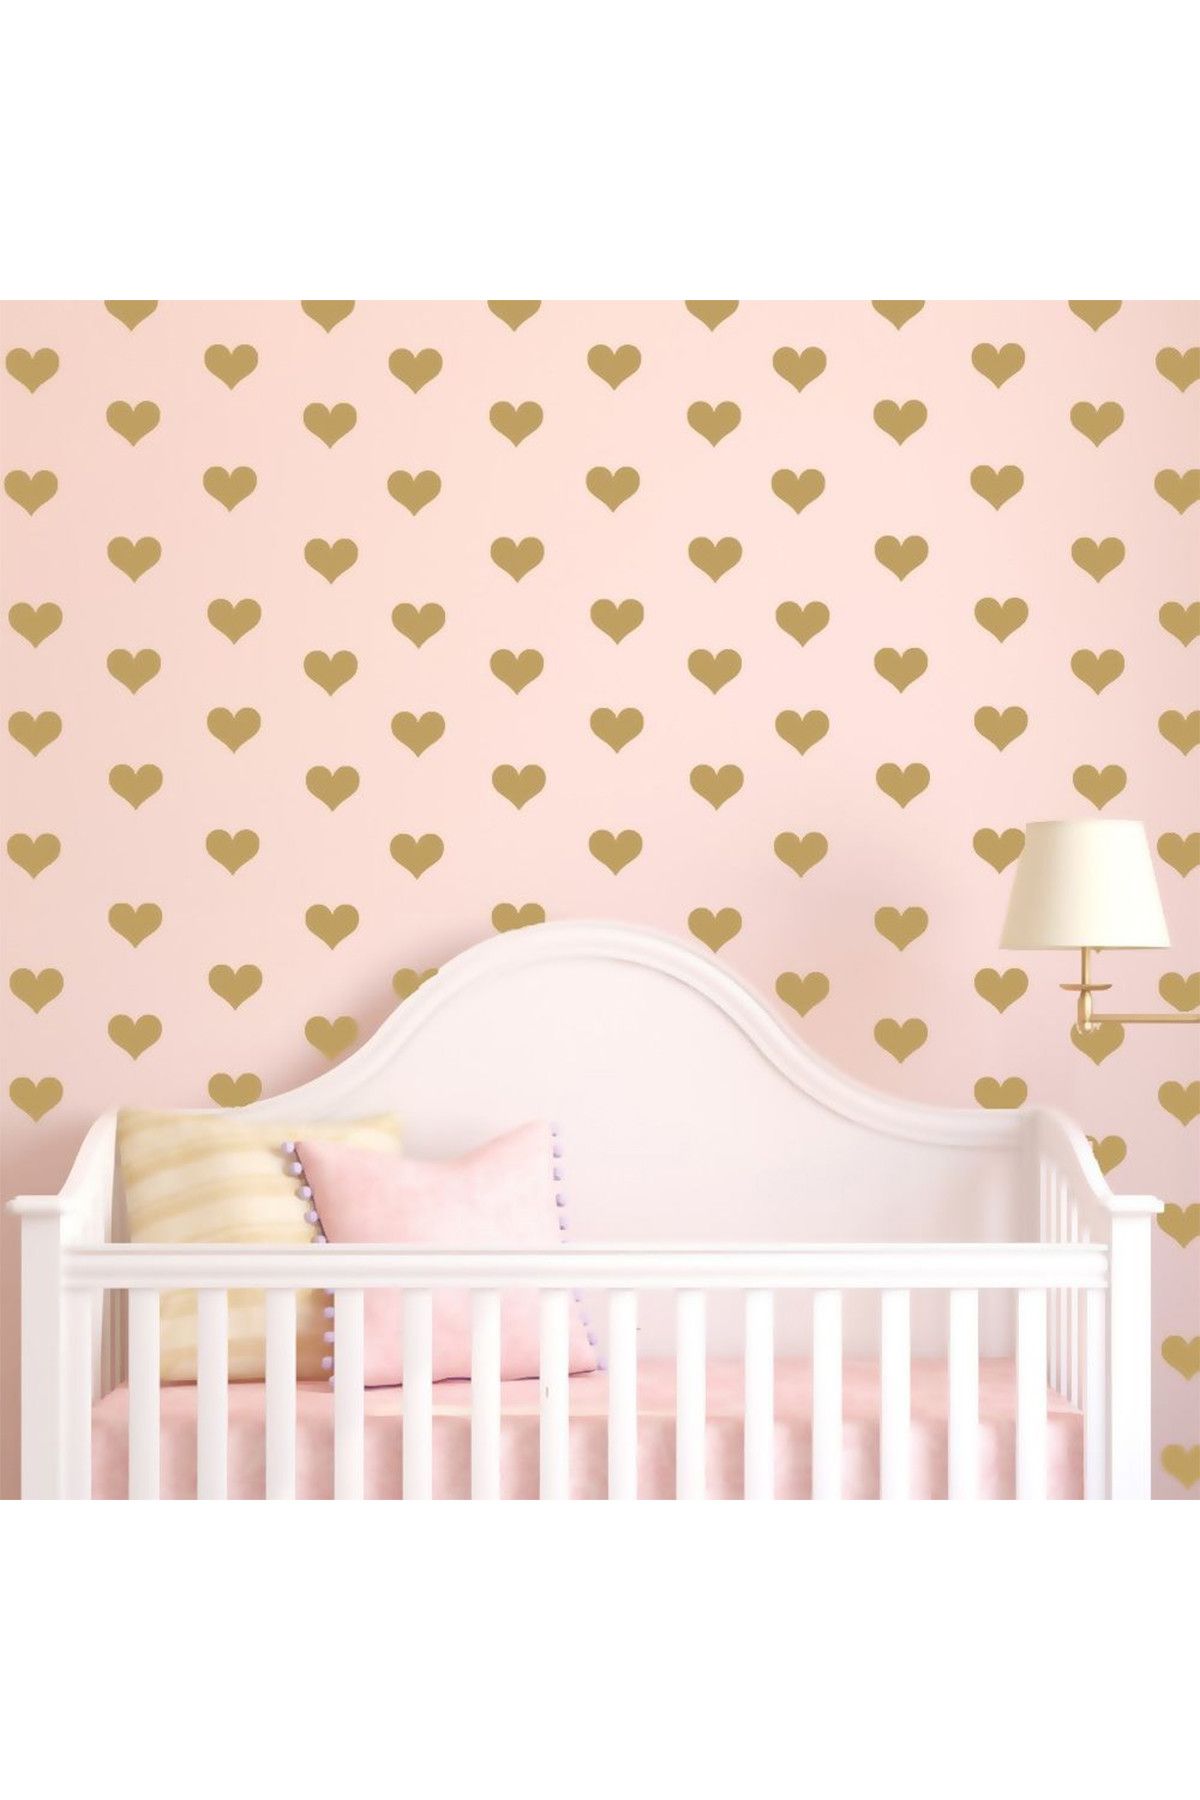 Tilki Dünyası 48 Adet Altın Renkli Kalpler Çocuk ve Bebek Odası Sticker